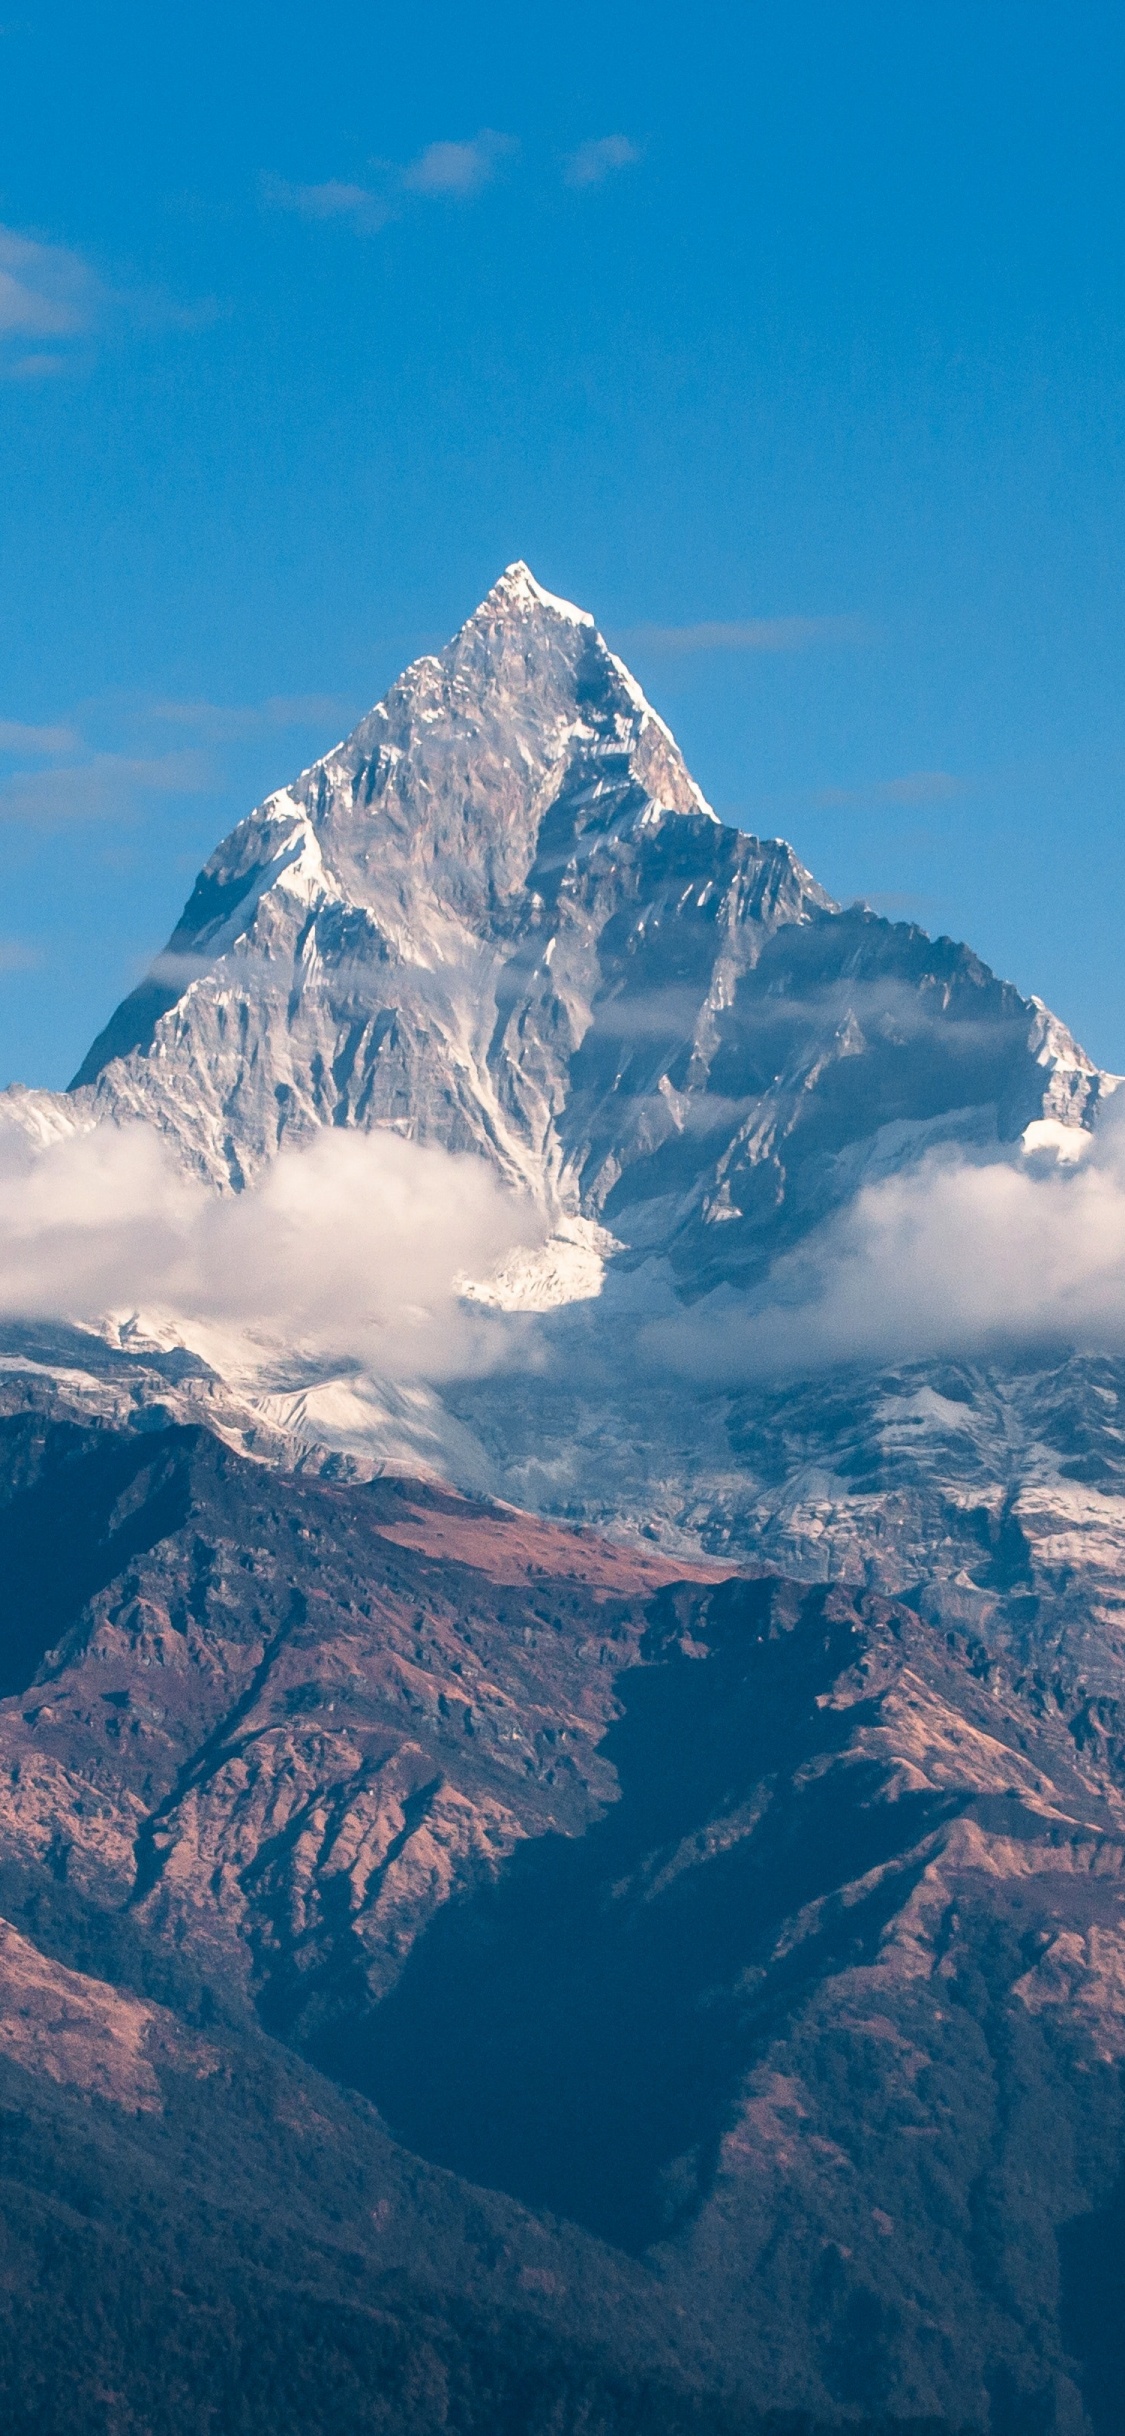 Himalayas 4K Wallpaper, Mountain Peak, Clouds, Mountains